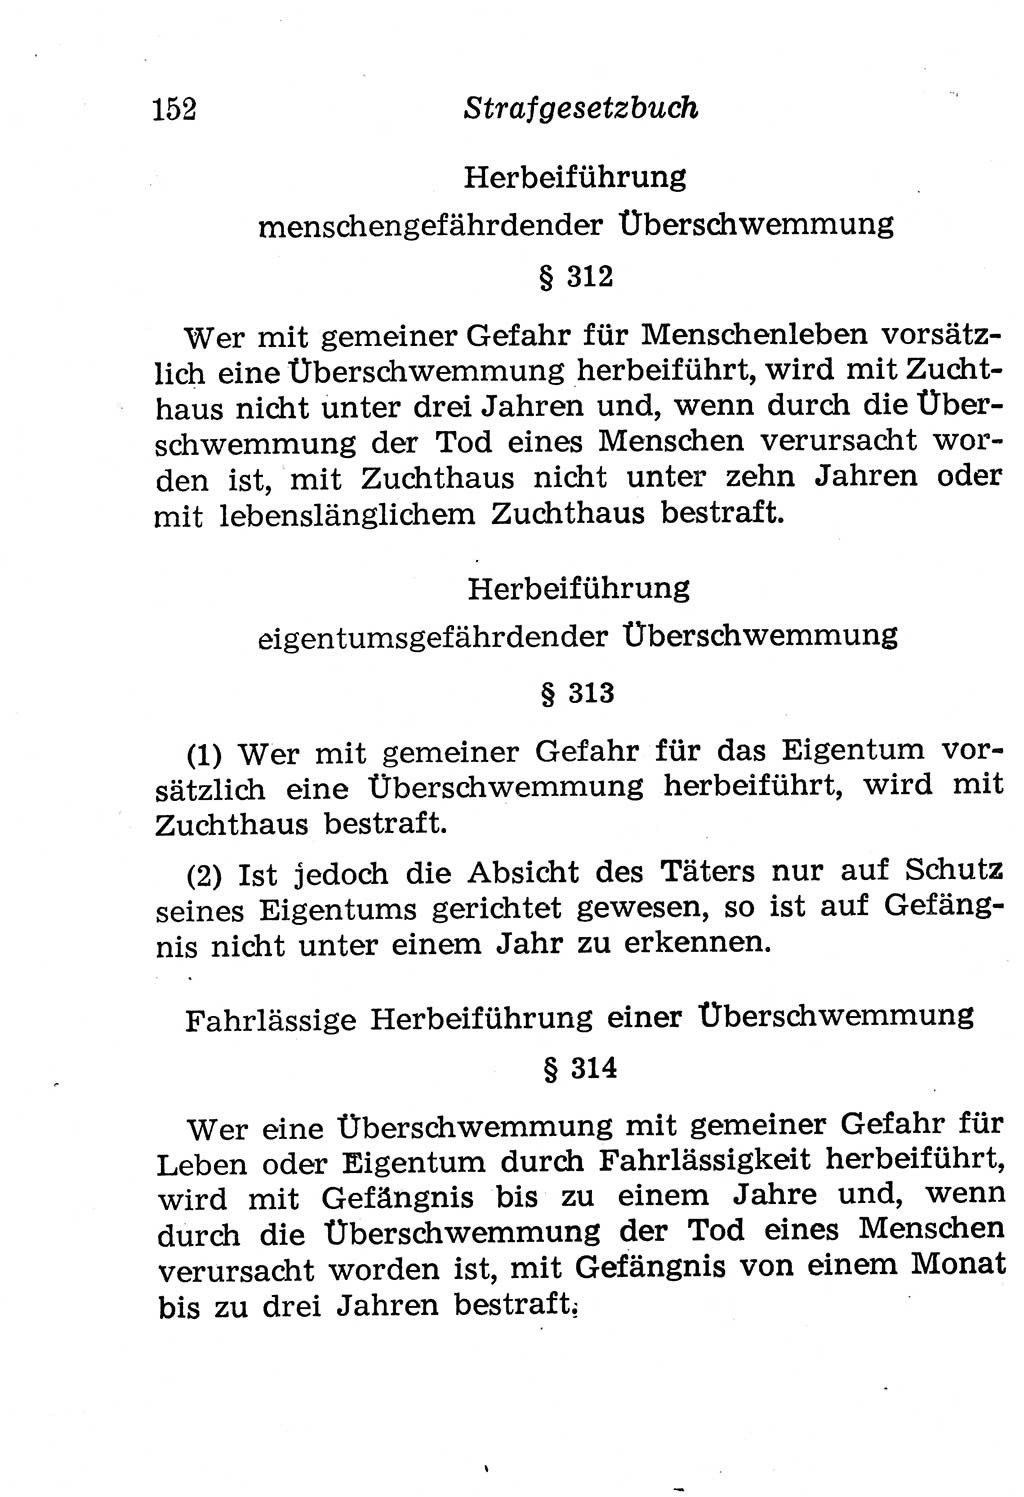 Strafgesetzbuch (StGB) und andere Strafgesetze [Deutsche Demokratische Republik (DDR)] 1958, Seite 152 (StGB Strafges. DDR 1958, S. 152)